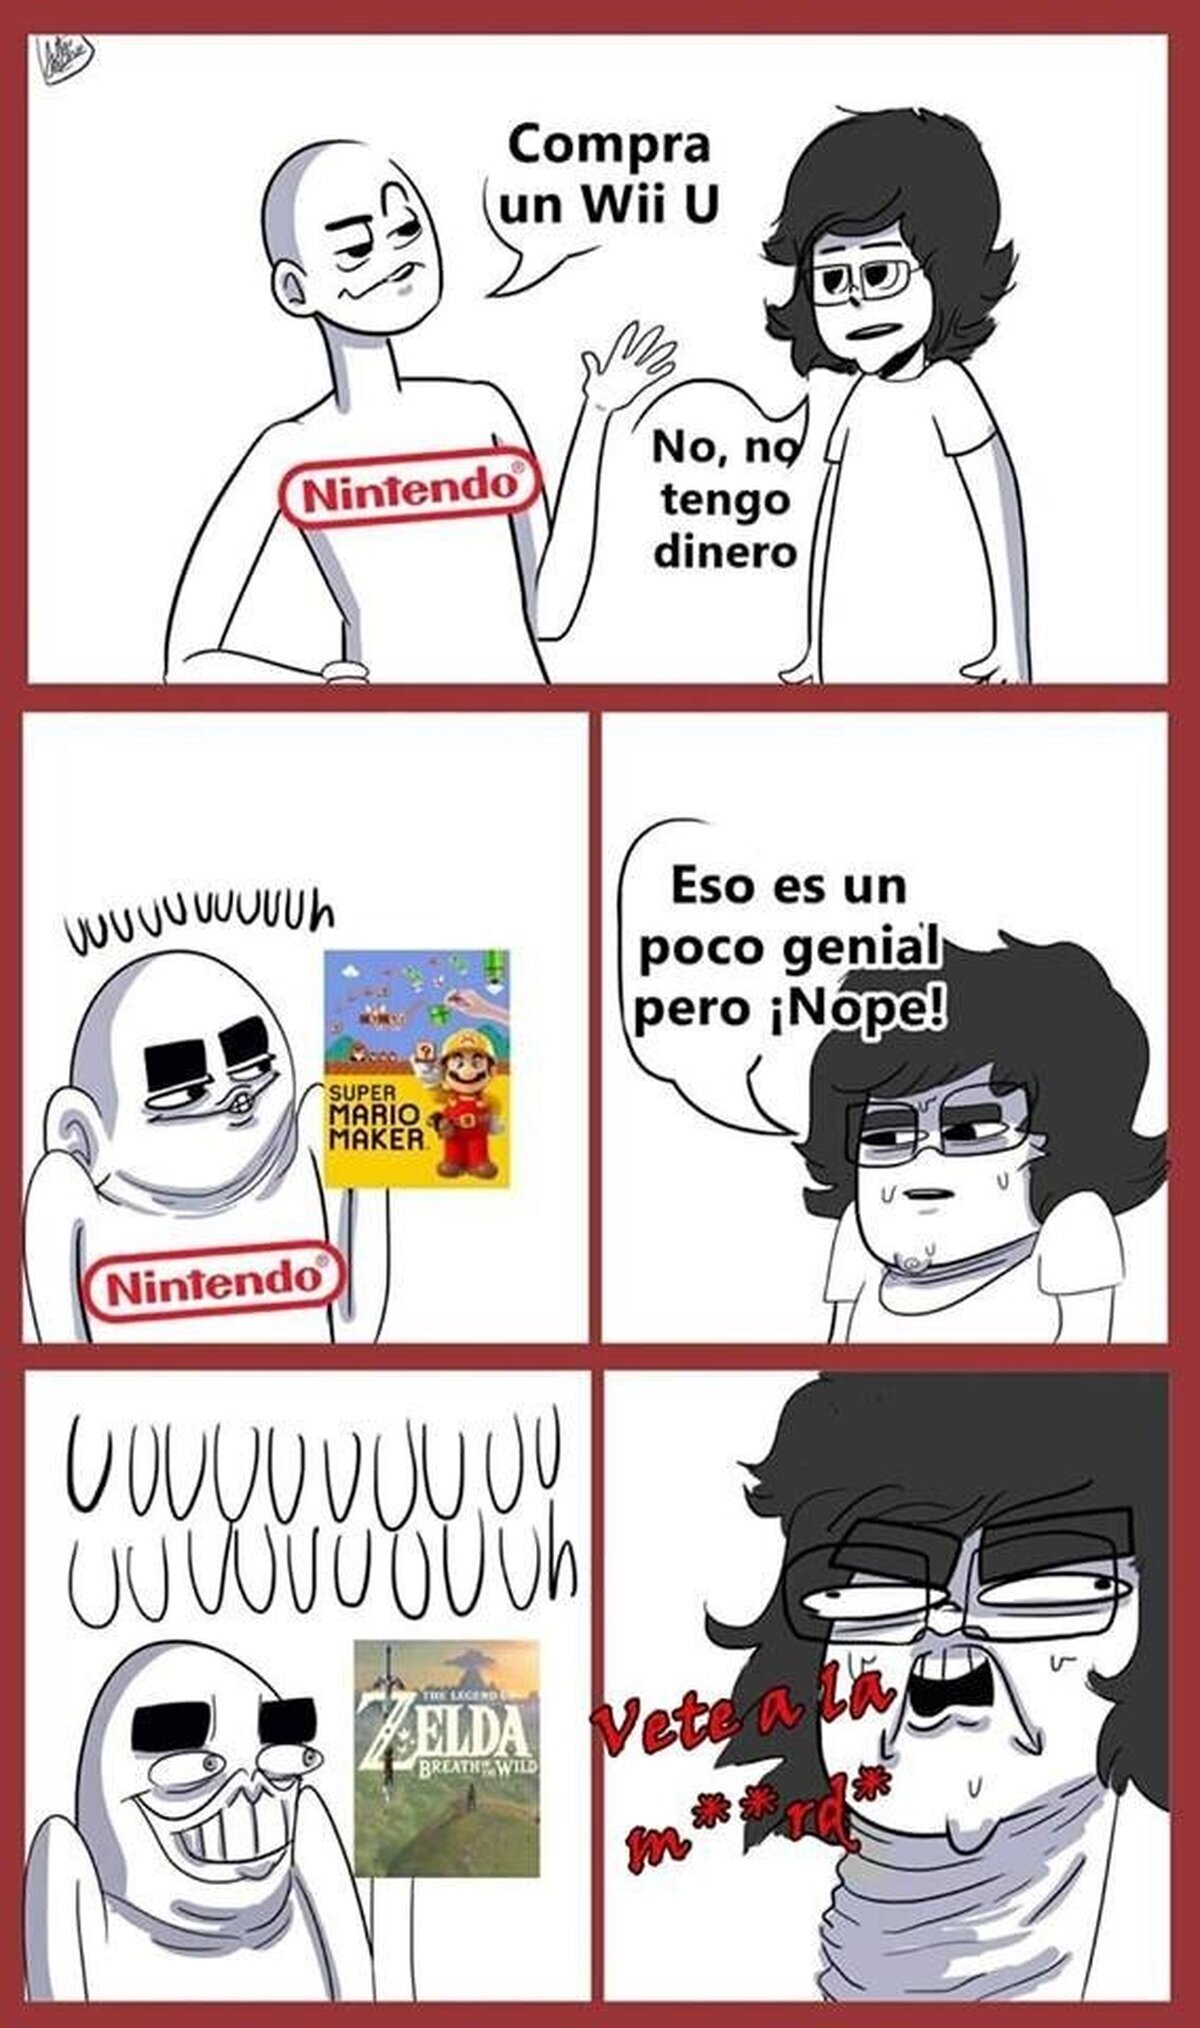 Nintendo, es usted un ser diabólico